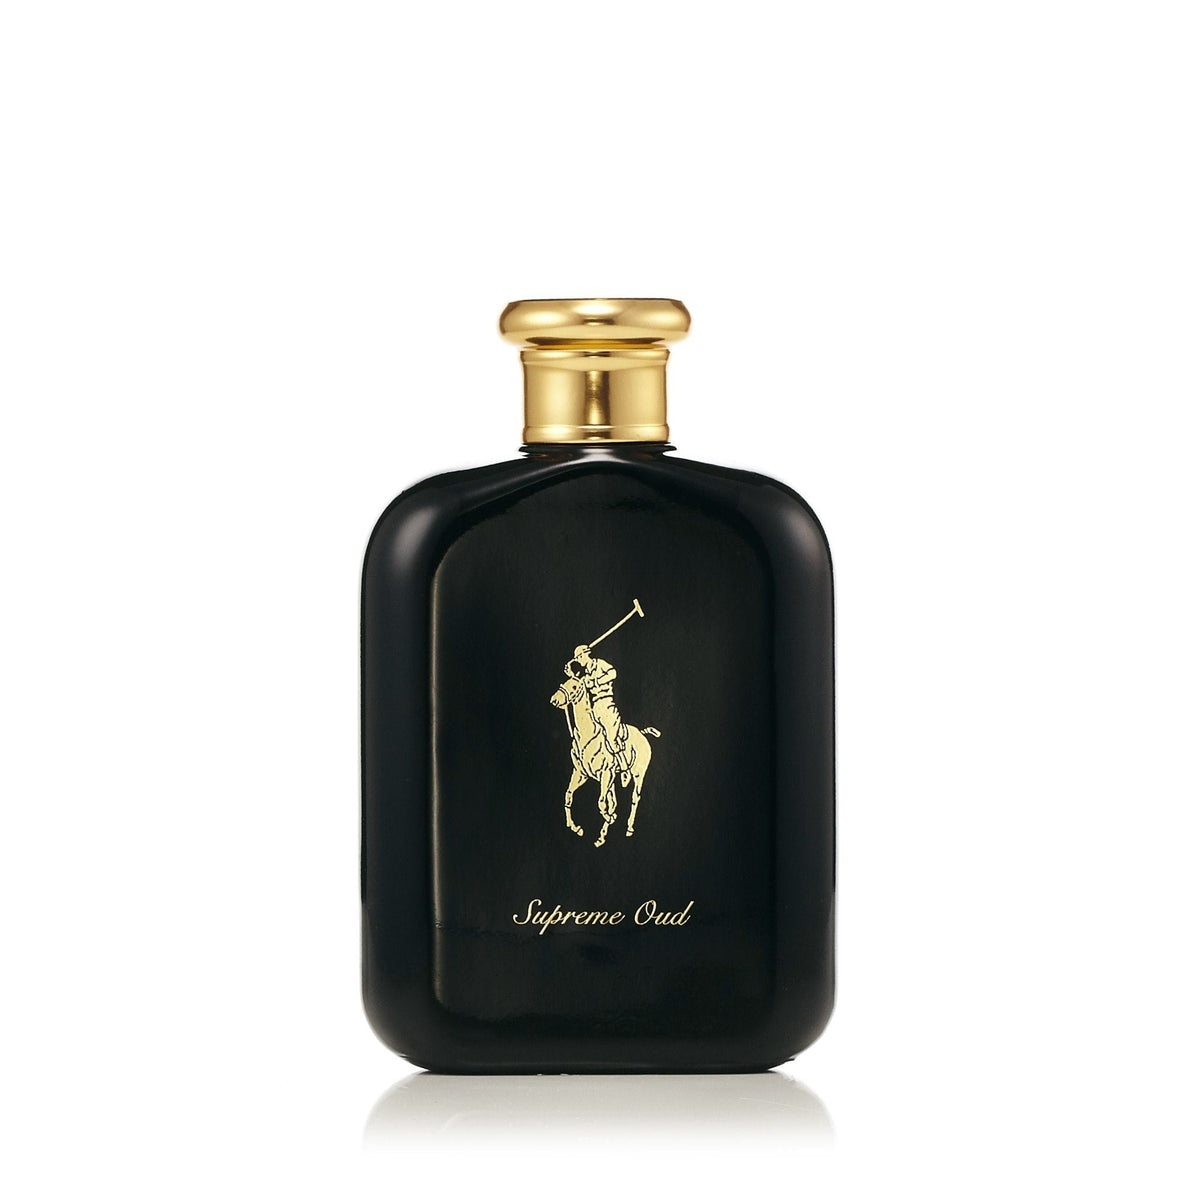 Polo Supreme Oud Eau de Parfum Spray for Men by Ralph Lauren 4.2 oz.